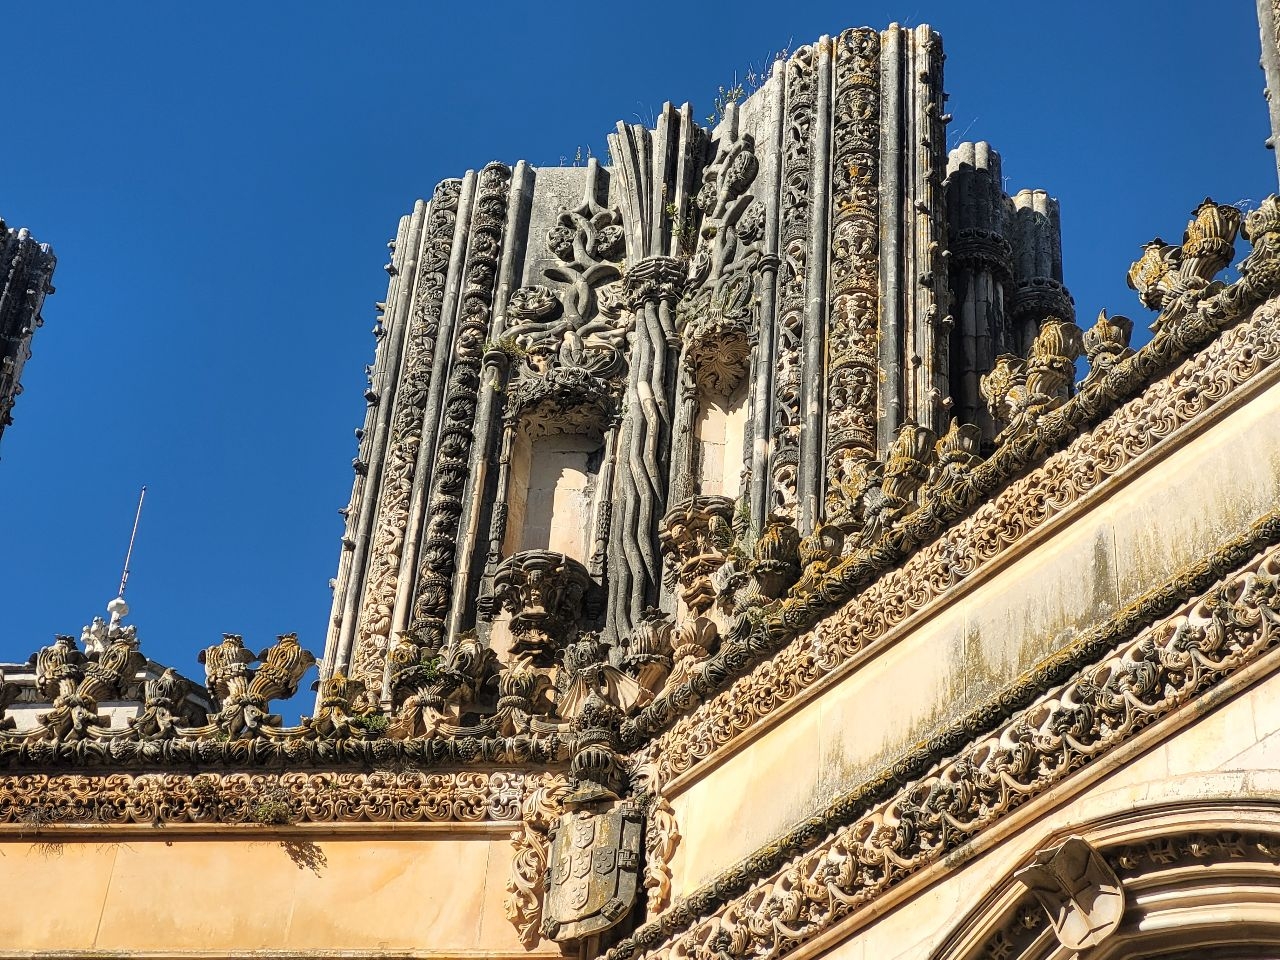 Монастырь Санта-Мария да Виктория (Баталья) Баталья, Португалия